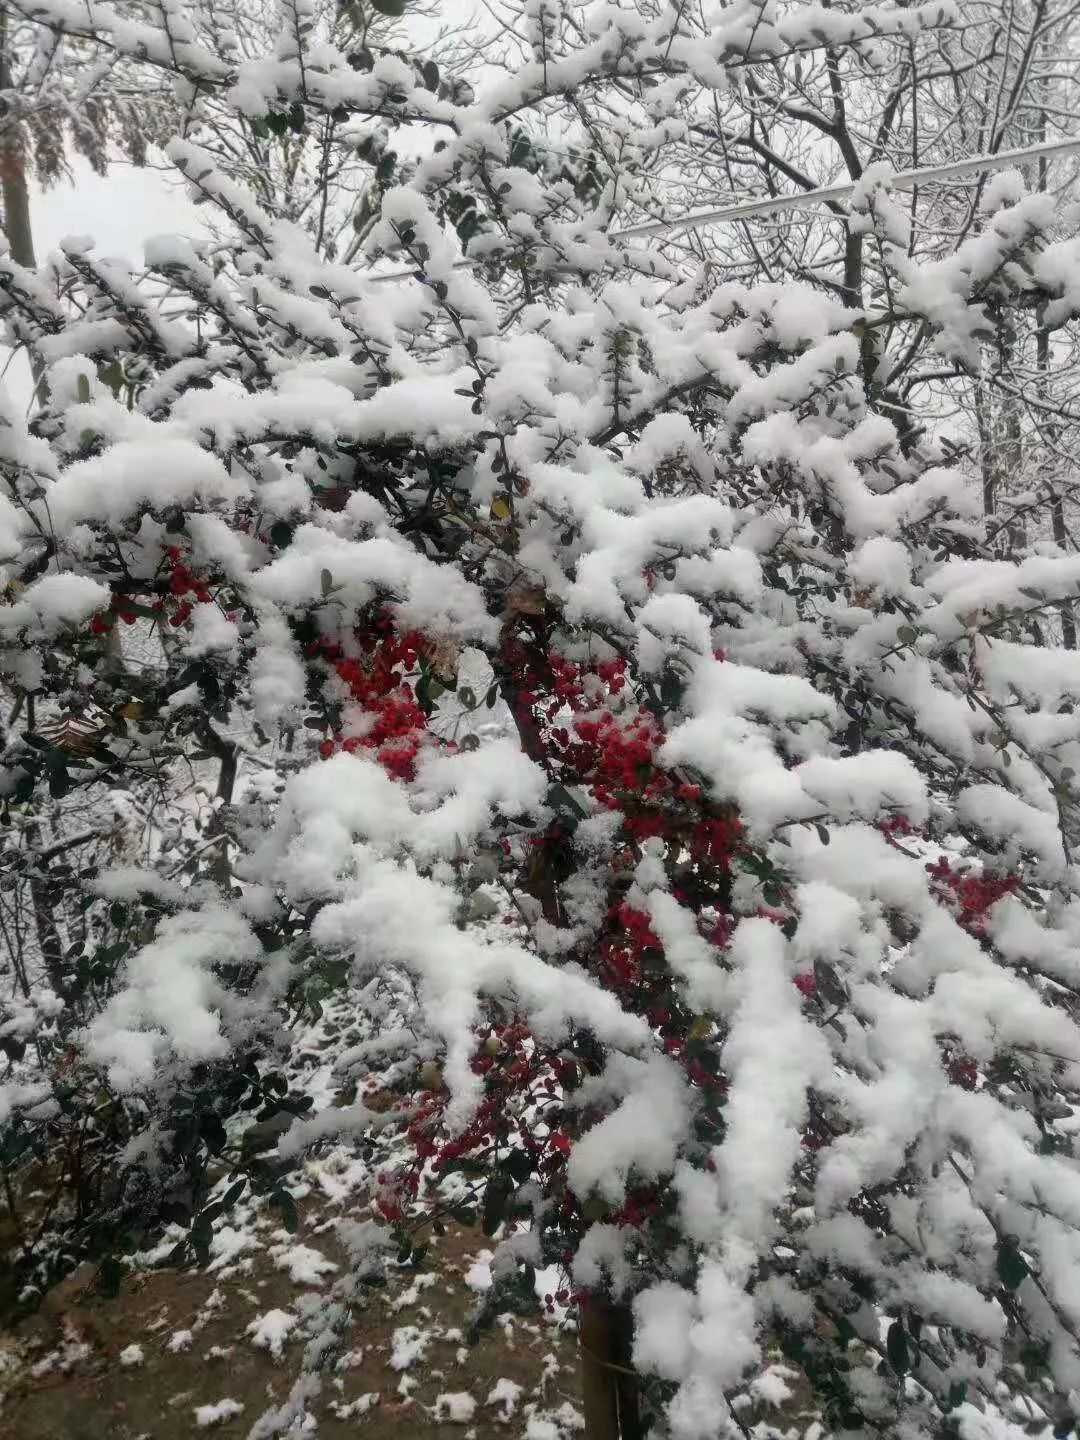 下雪了!今年冬天徽县的第一场雪如期而至…已刷爆朋友圈(视频 图片)